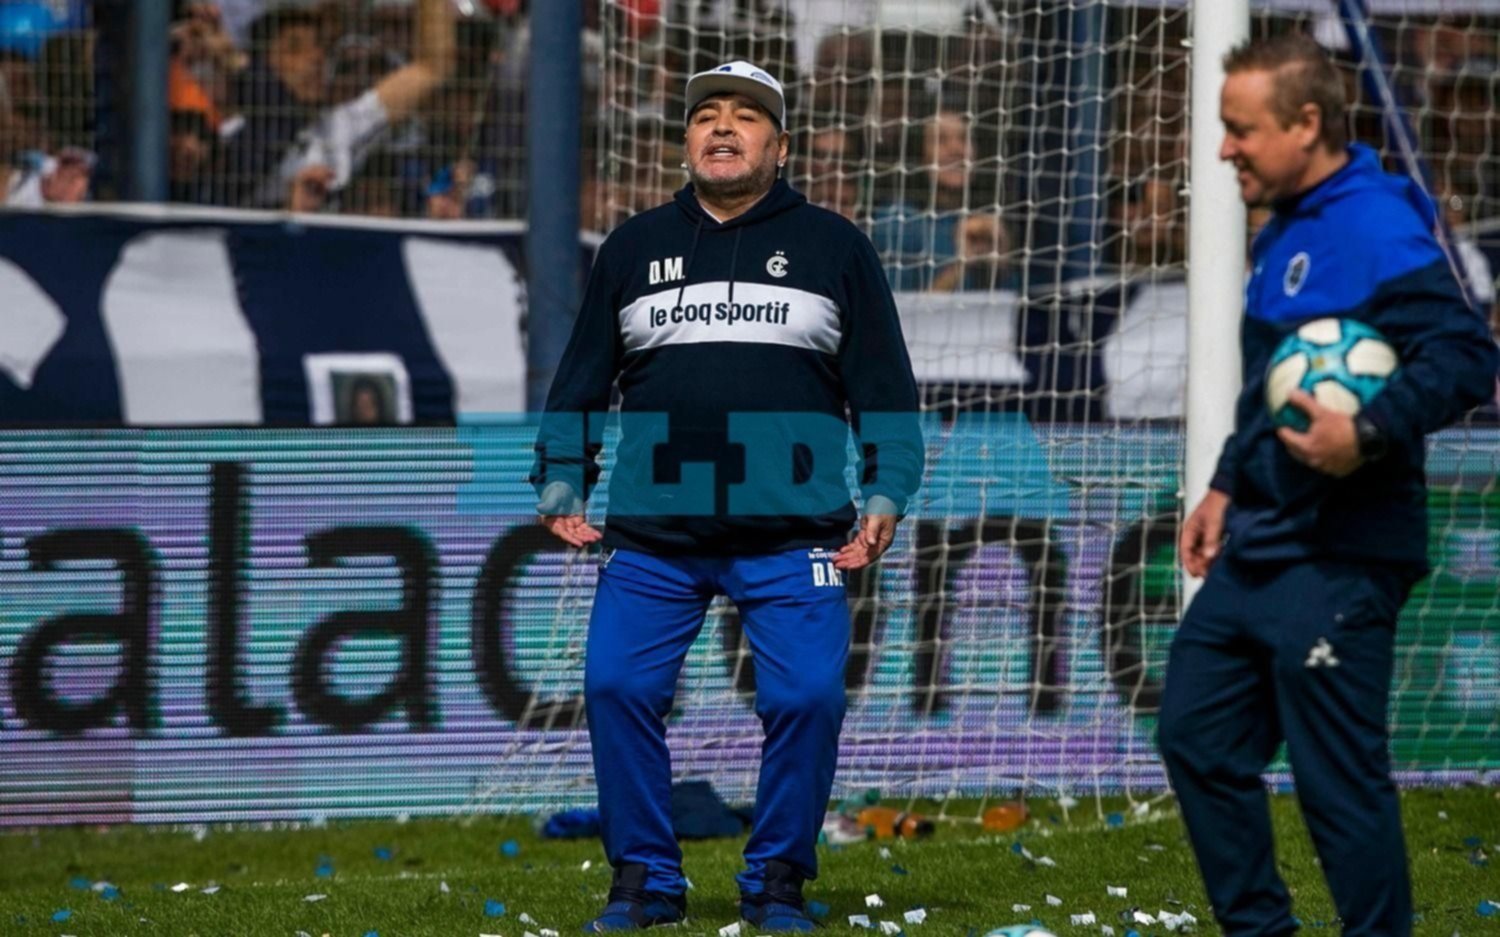 Maradona como un hincha más: "Dale Lo, dale Lo, dale Lobo dale Lo"